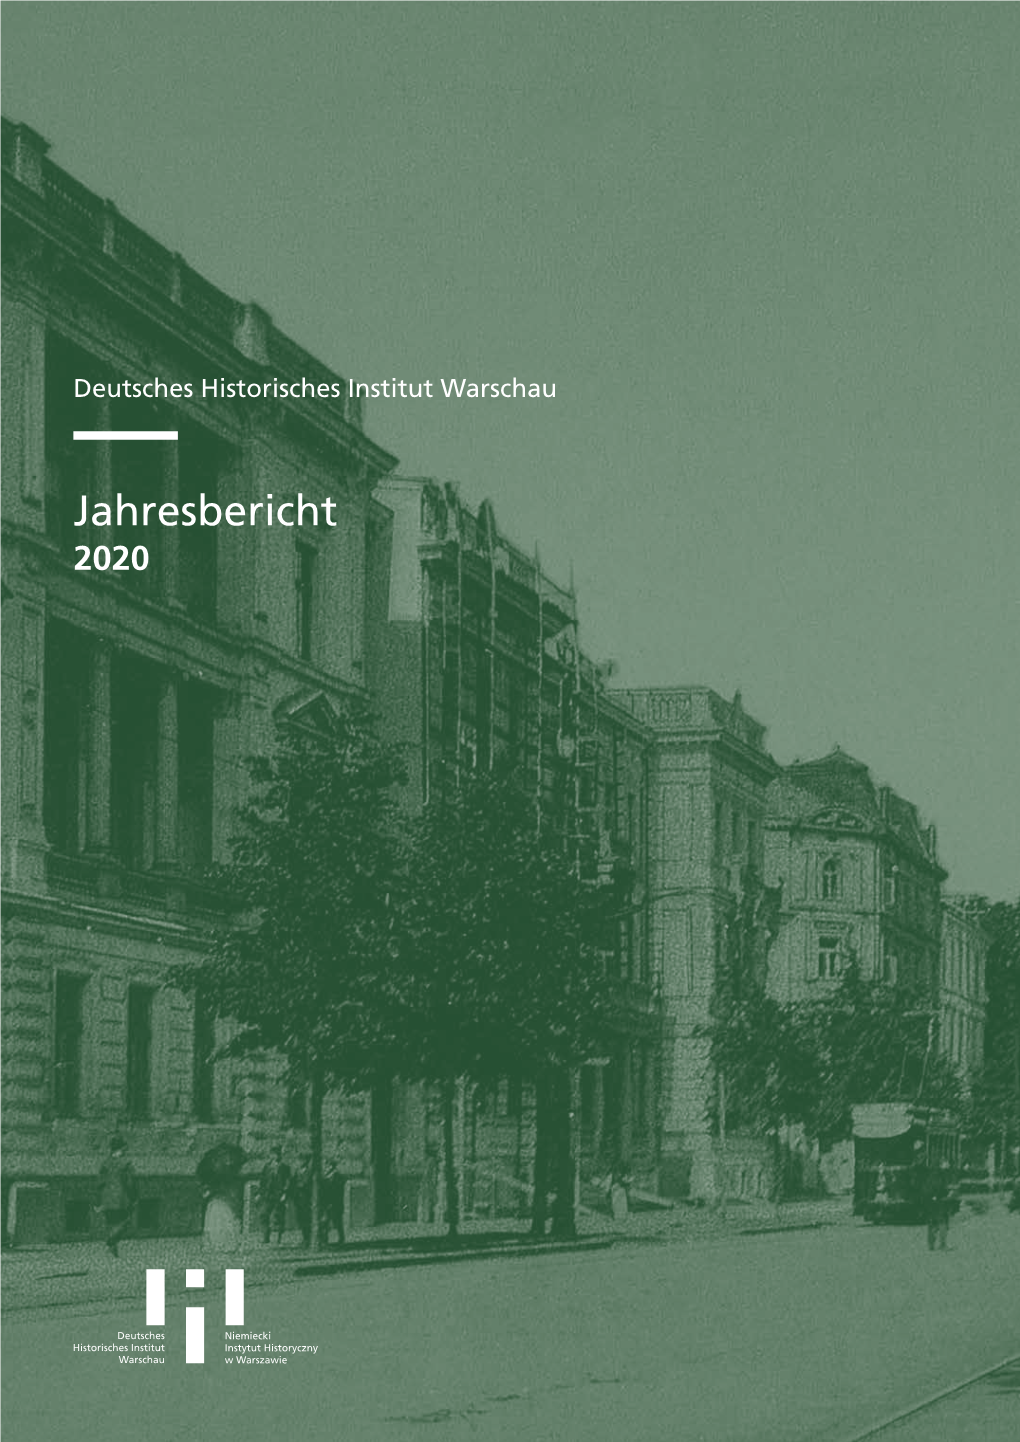 Jahresbericht 2020 © Deutsches Historisches Institut Warschau